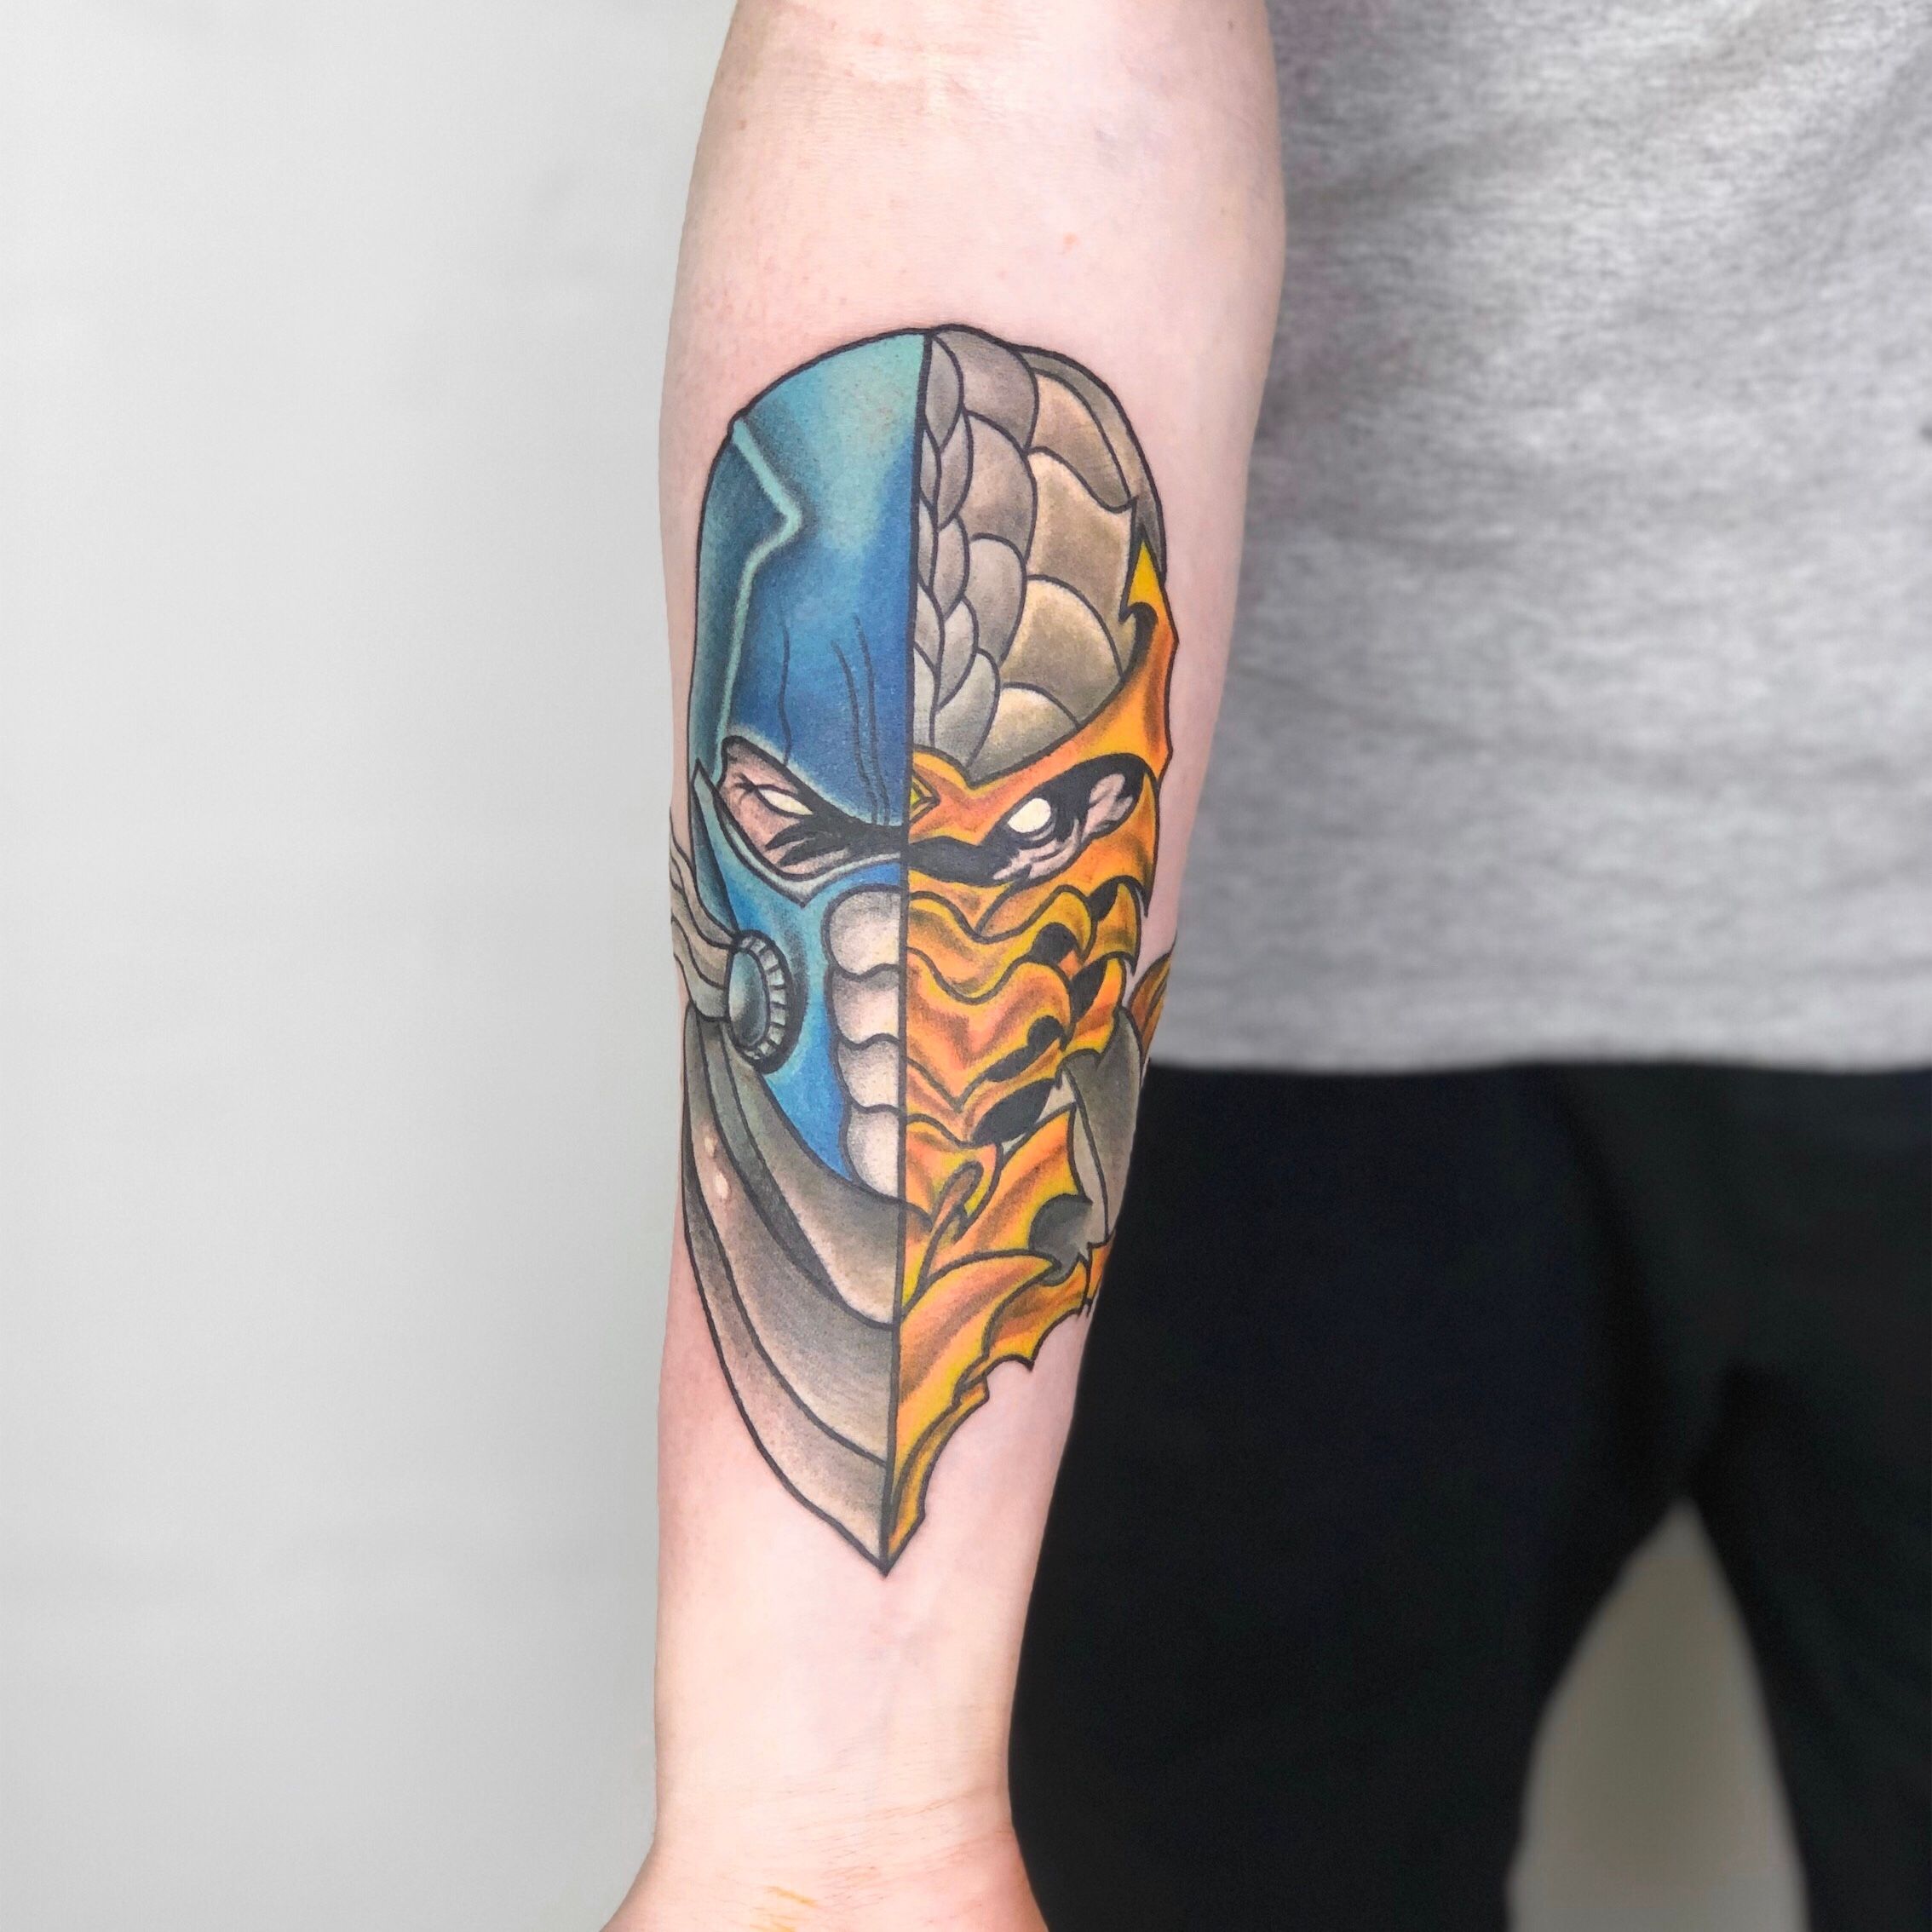 Sub Zero Mortal Kombat tattoo sleeve  Best Tattoo Ideas Gallery